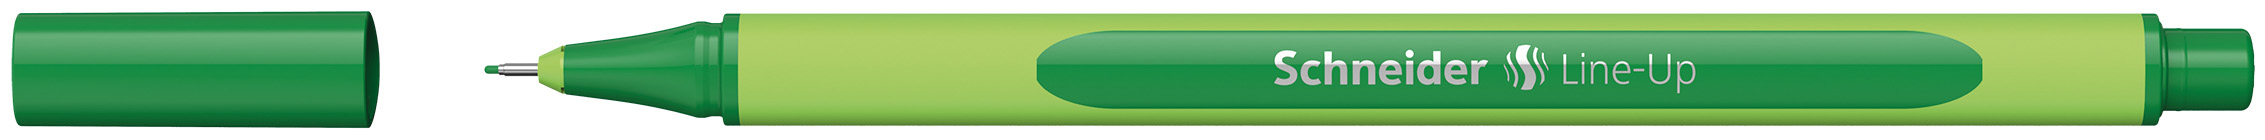 SCHNEIDER Fineliner Line-Up 191004 vert